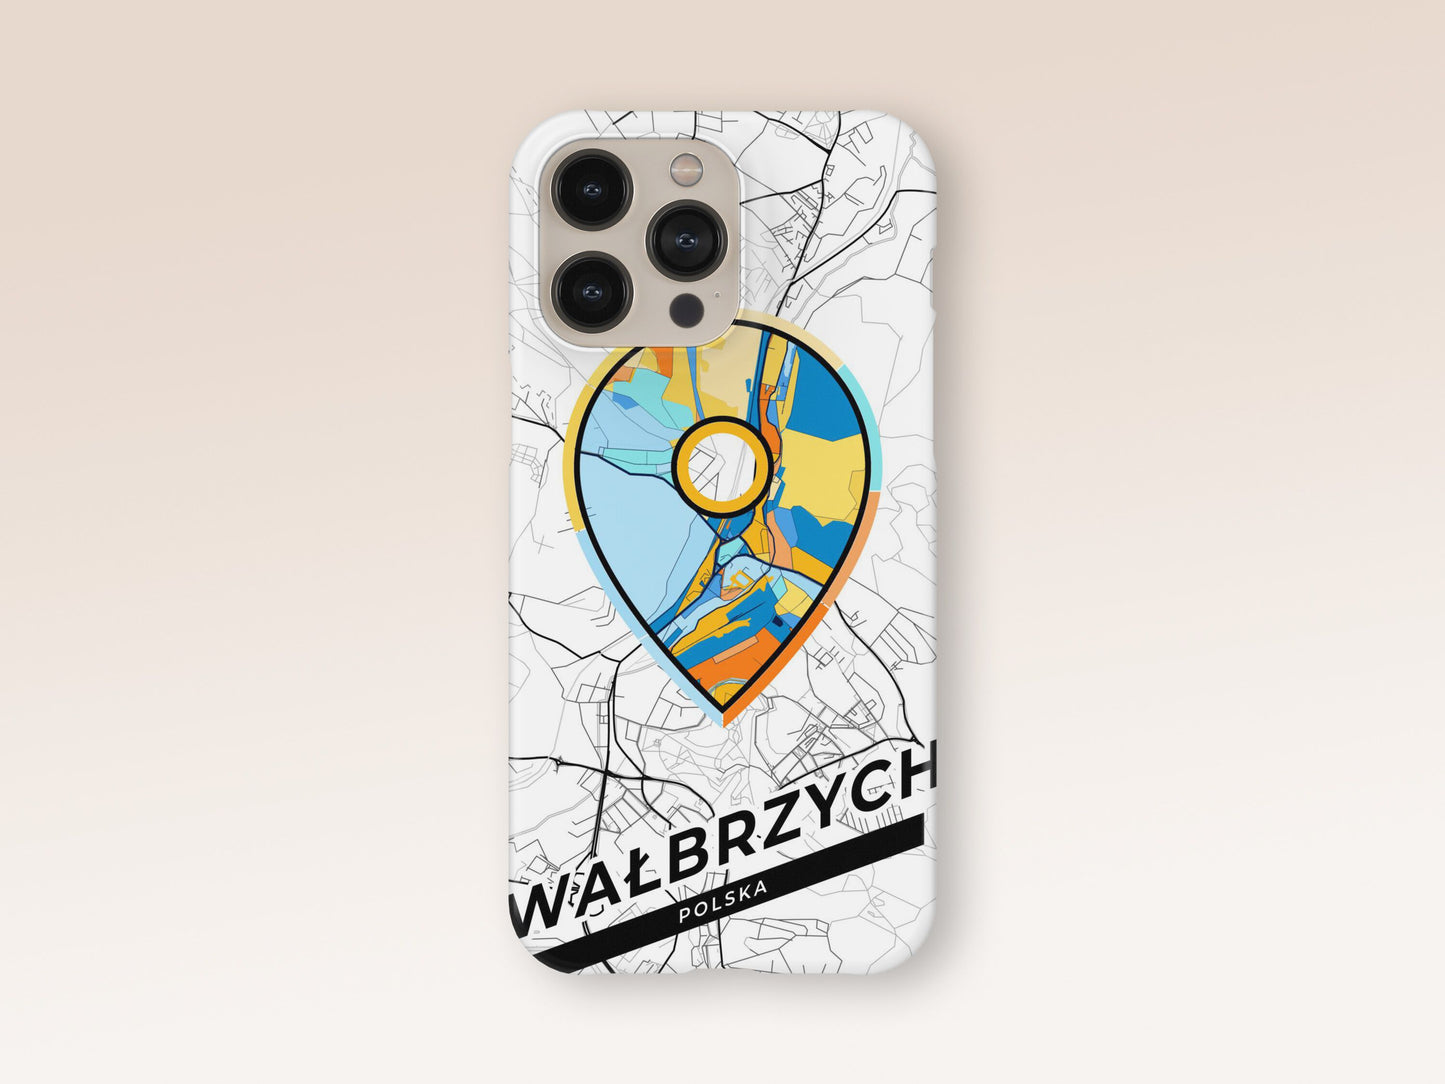 Wałbrzych Poland slim phone case with colorful icon 1